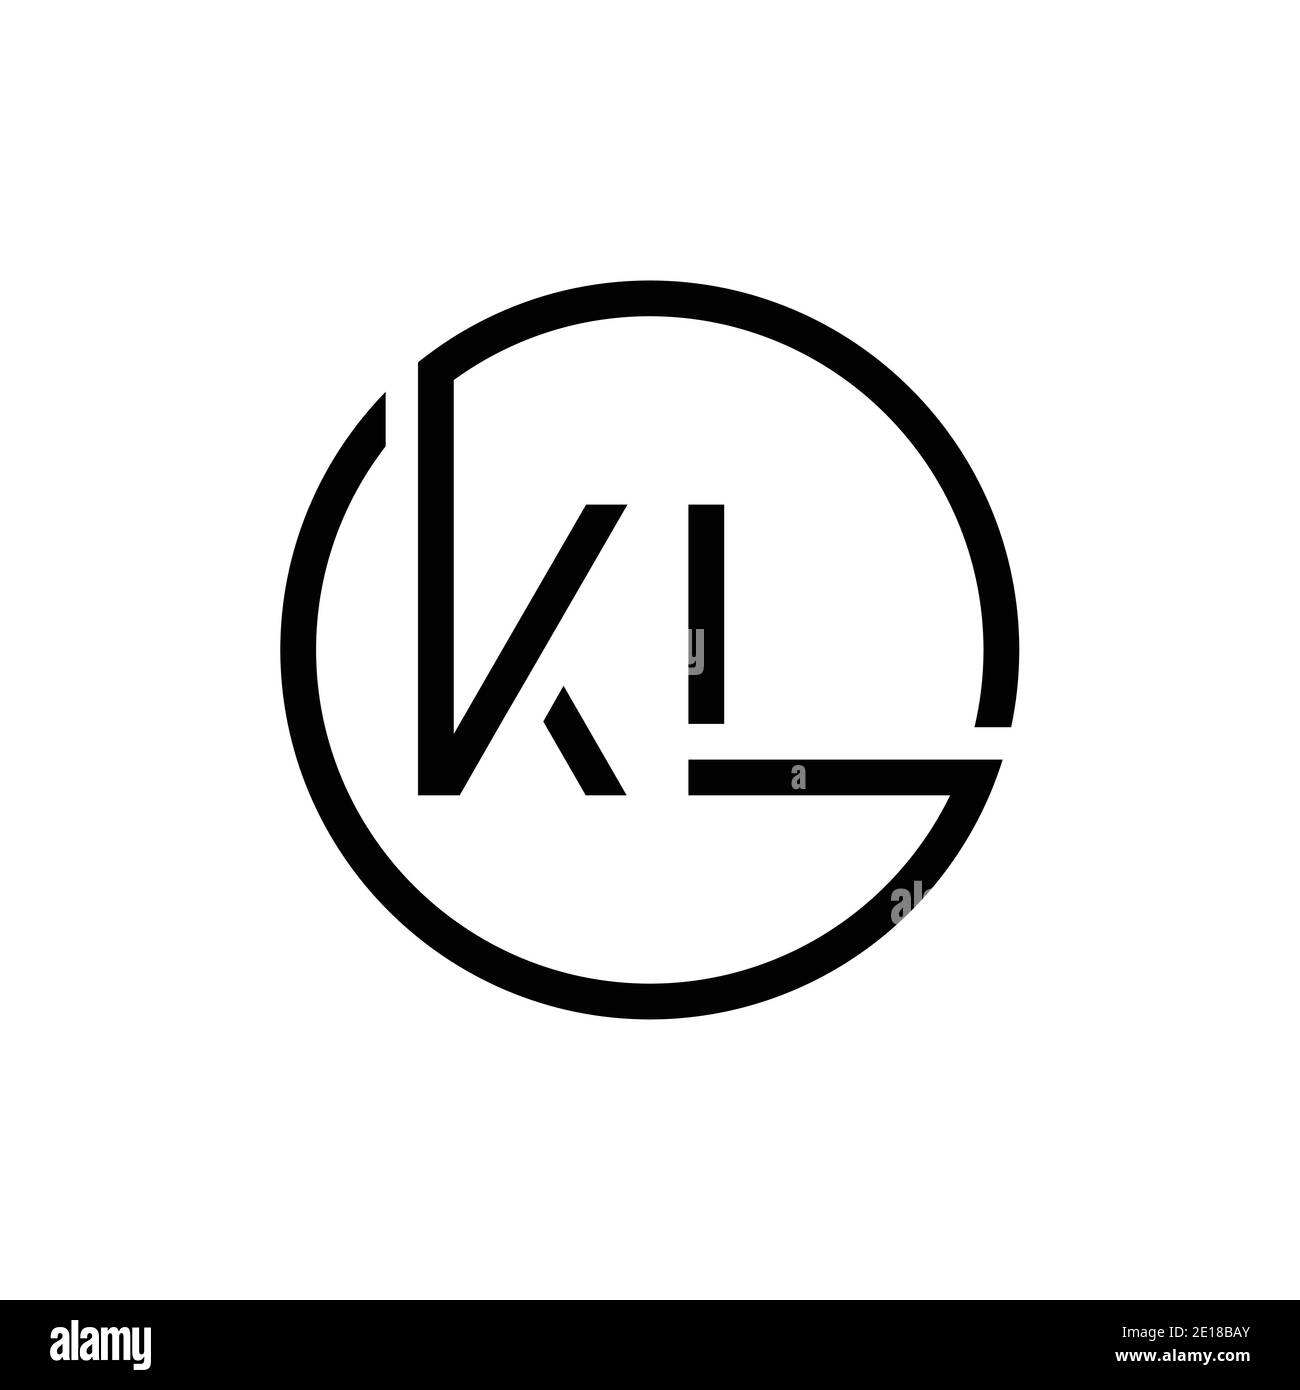 Modello vettoriale di progettazione del logo KL con lettera collegata. Creative Circle KL minimal, disegno piatto del logo illustrazione vettoriale Illustrazione Vettoriale